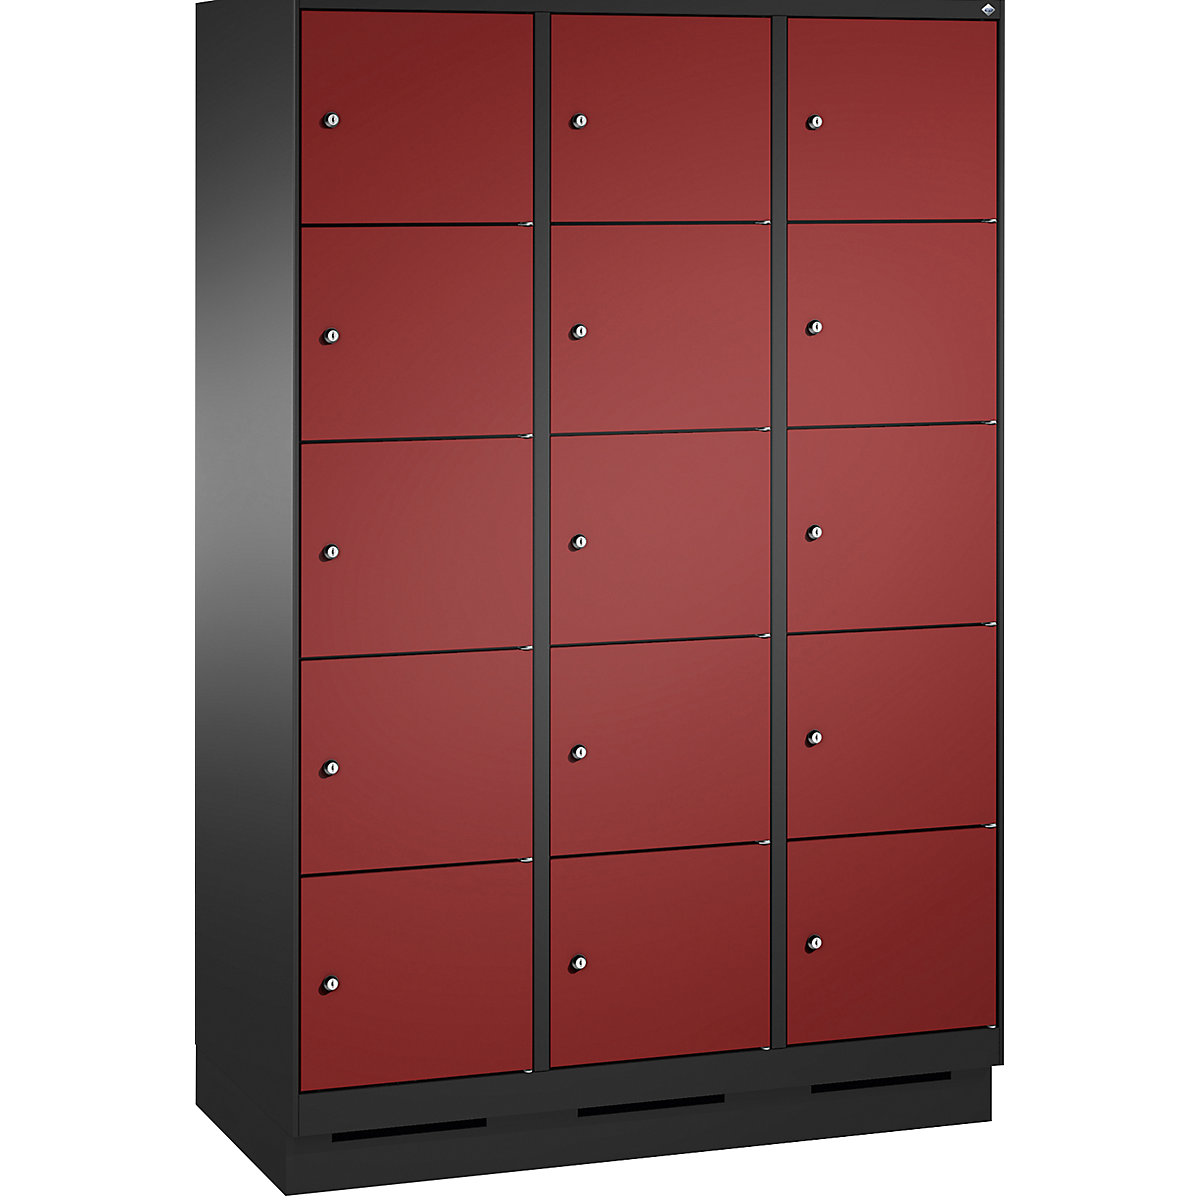 Armoire à casiers sur socle EVOLO – C+P, 3 compartiments, 5 casiers chacun, largeur compartiments 400 mm, gris noir / rouge rubis-10